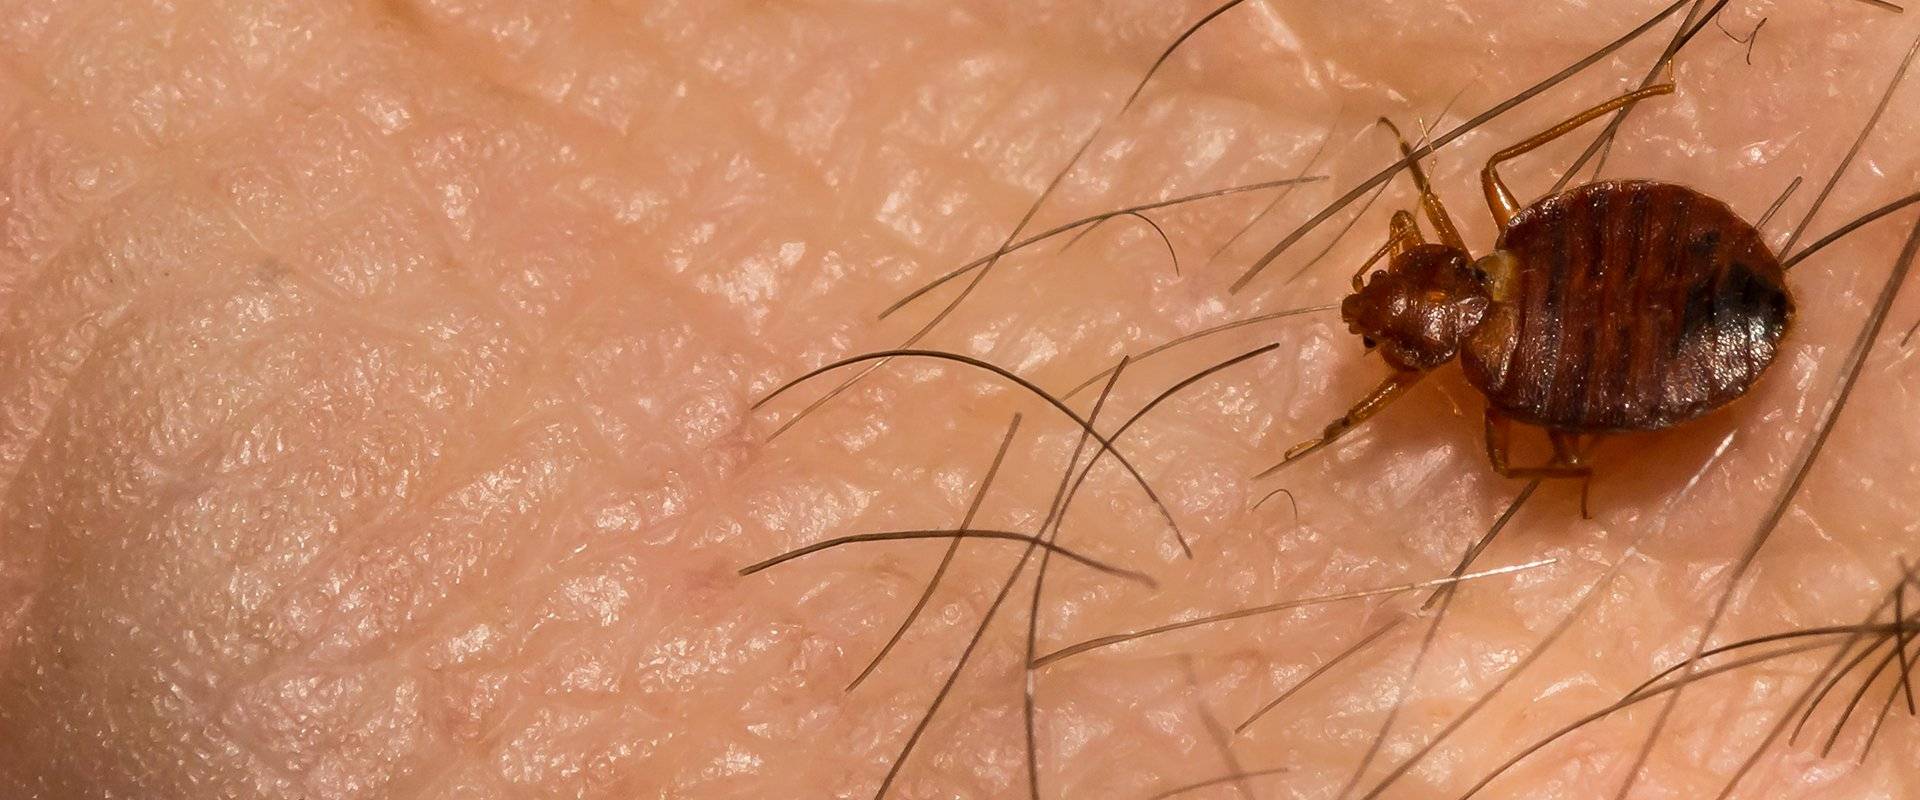 bed bug on skin